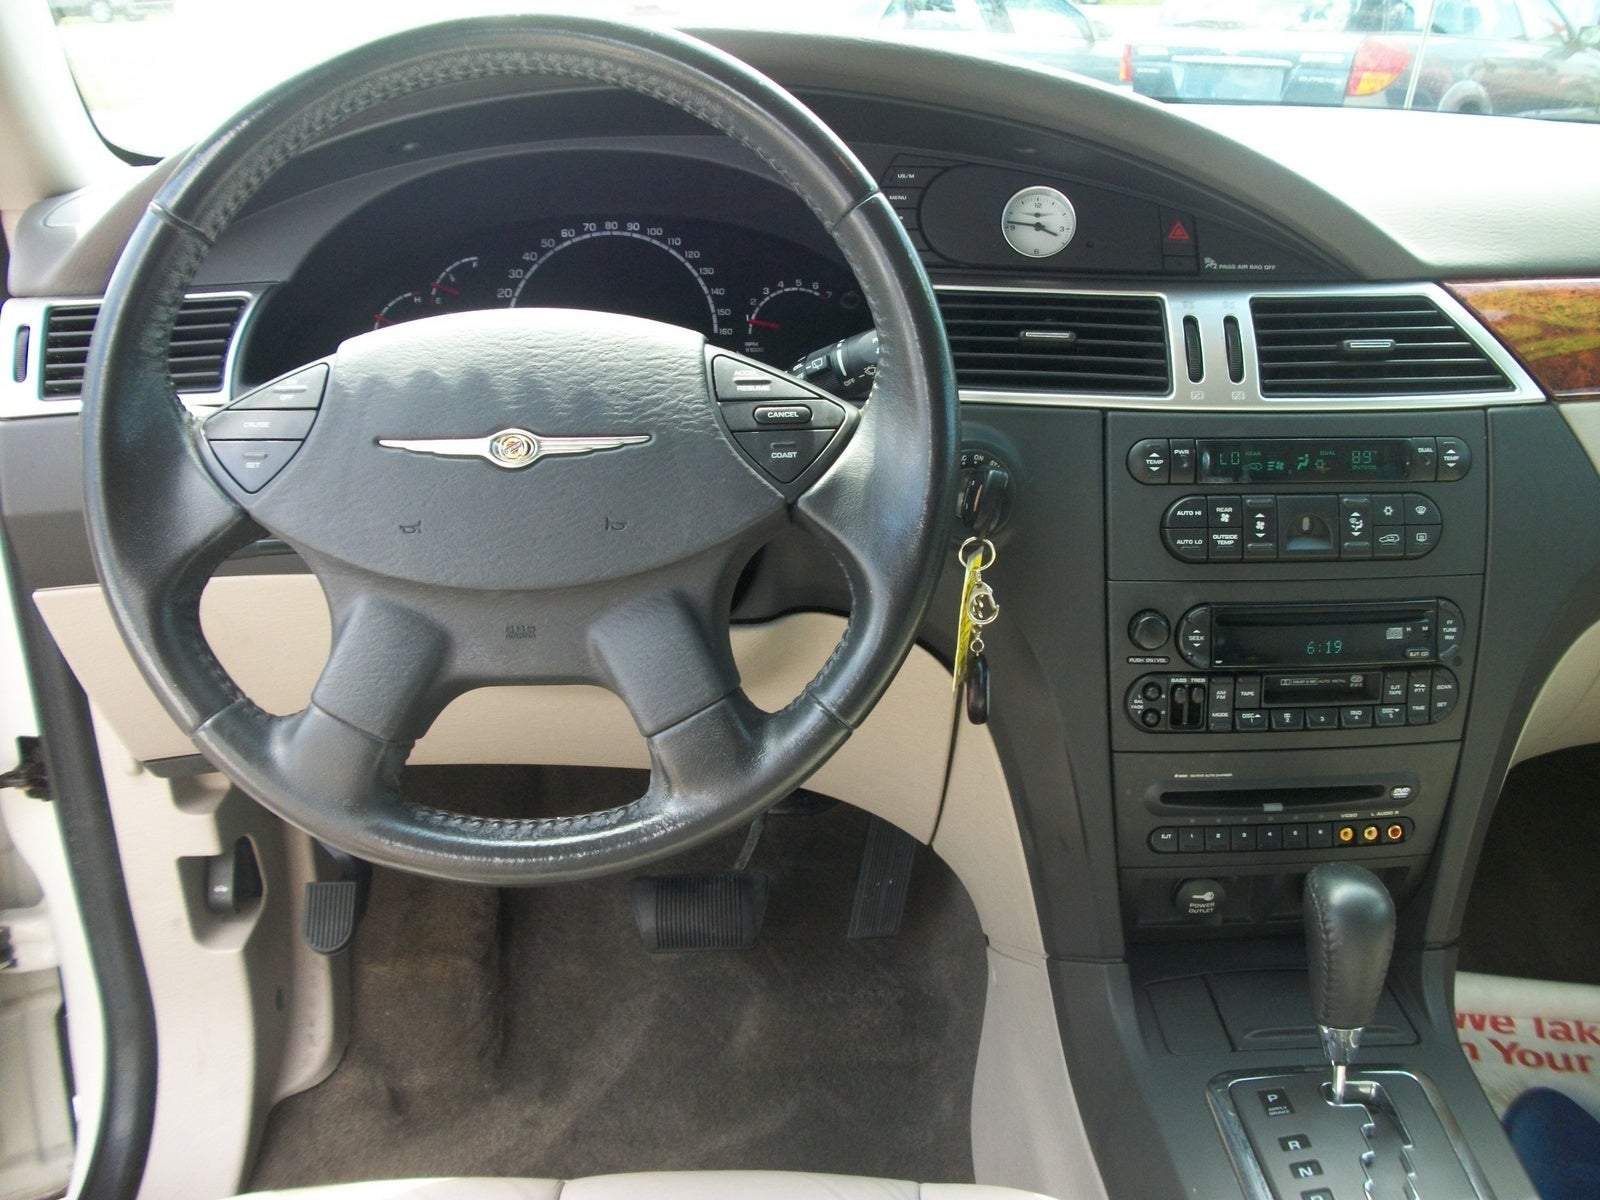 2005 Chrysler pacifica interior photos